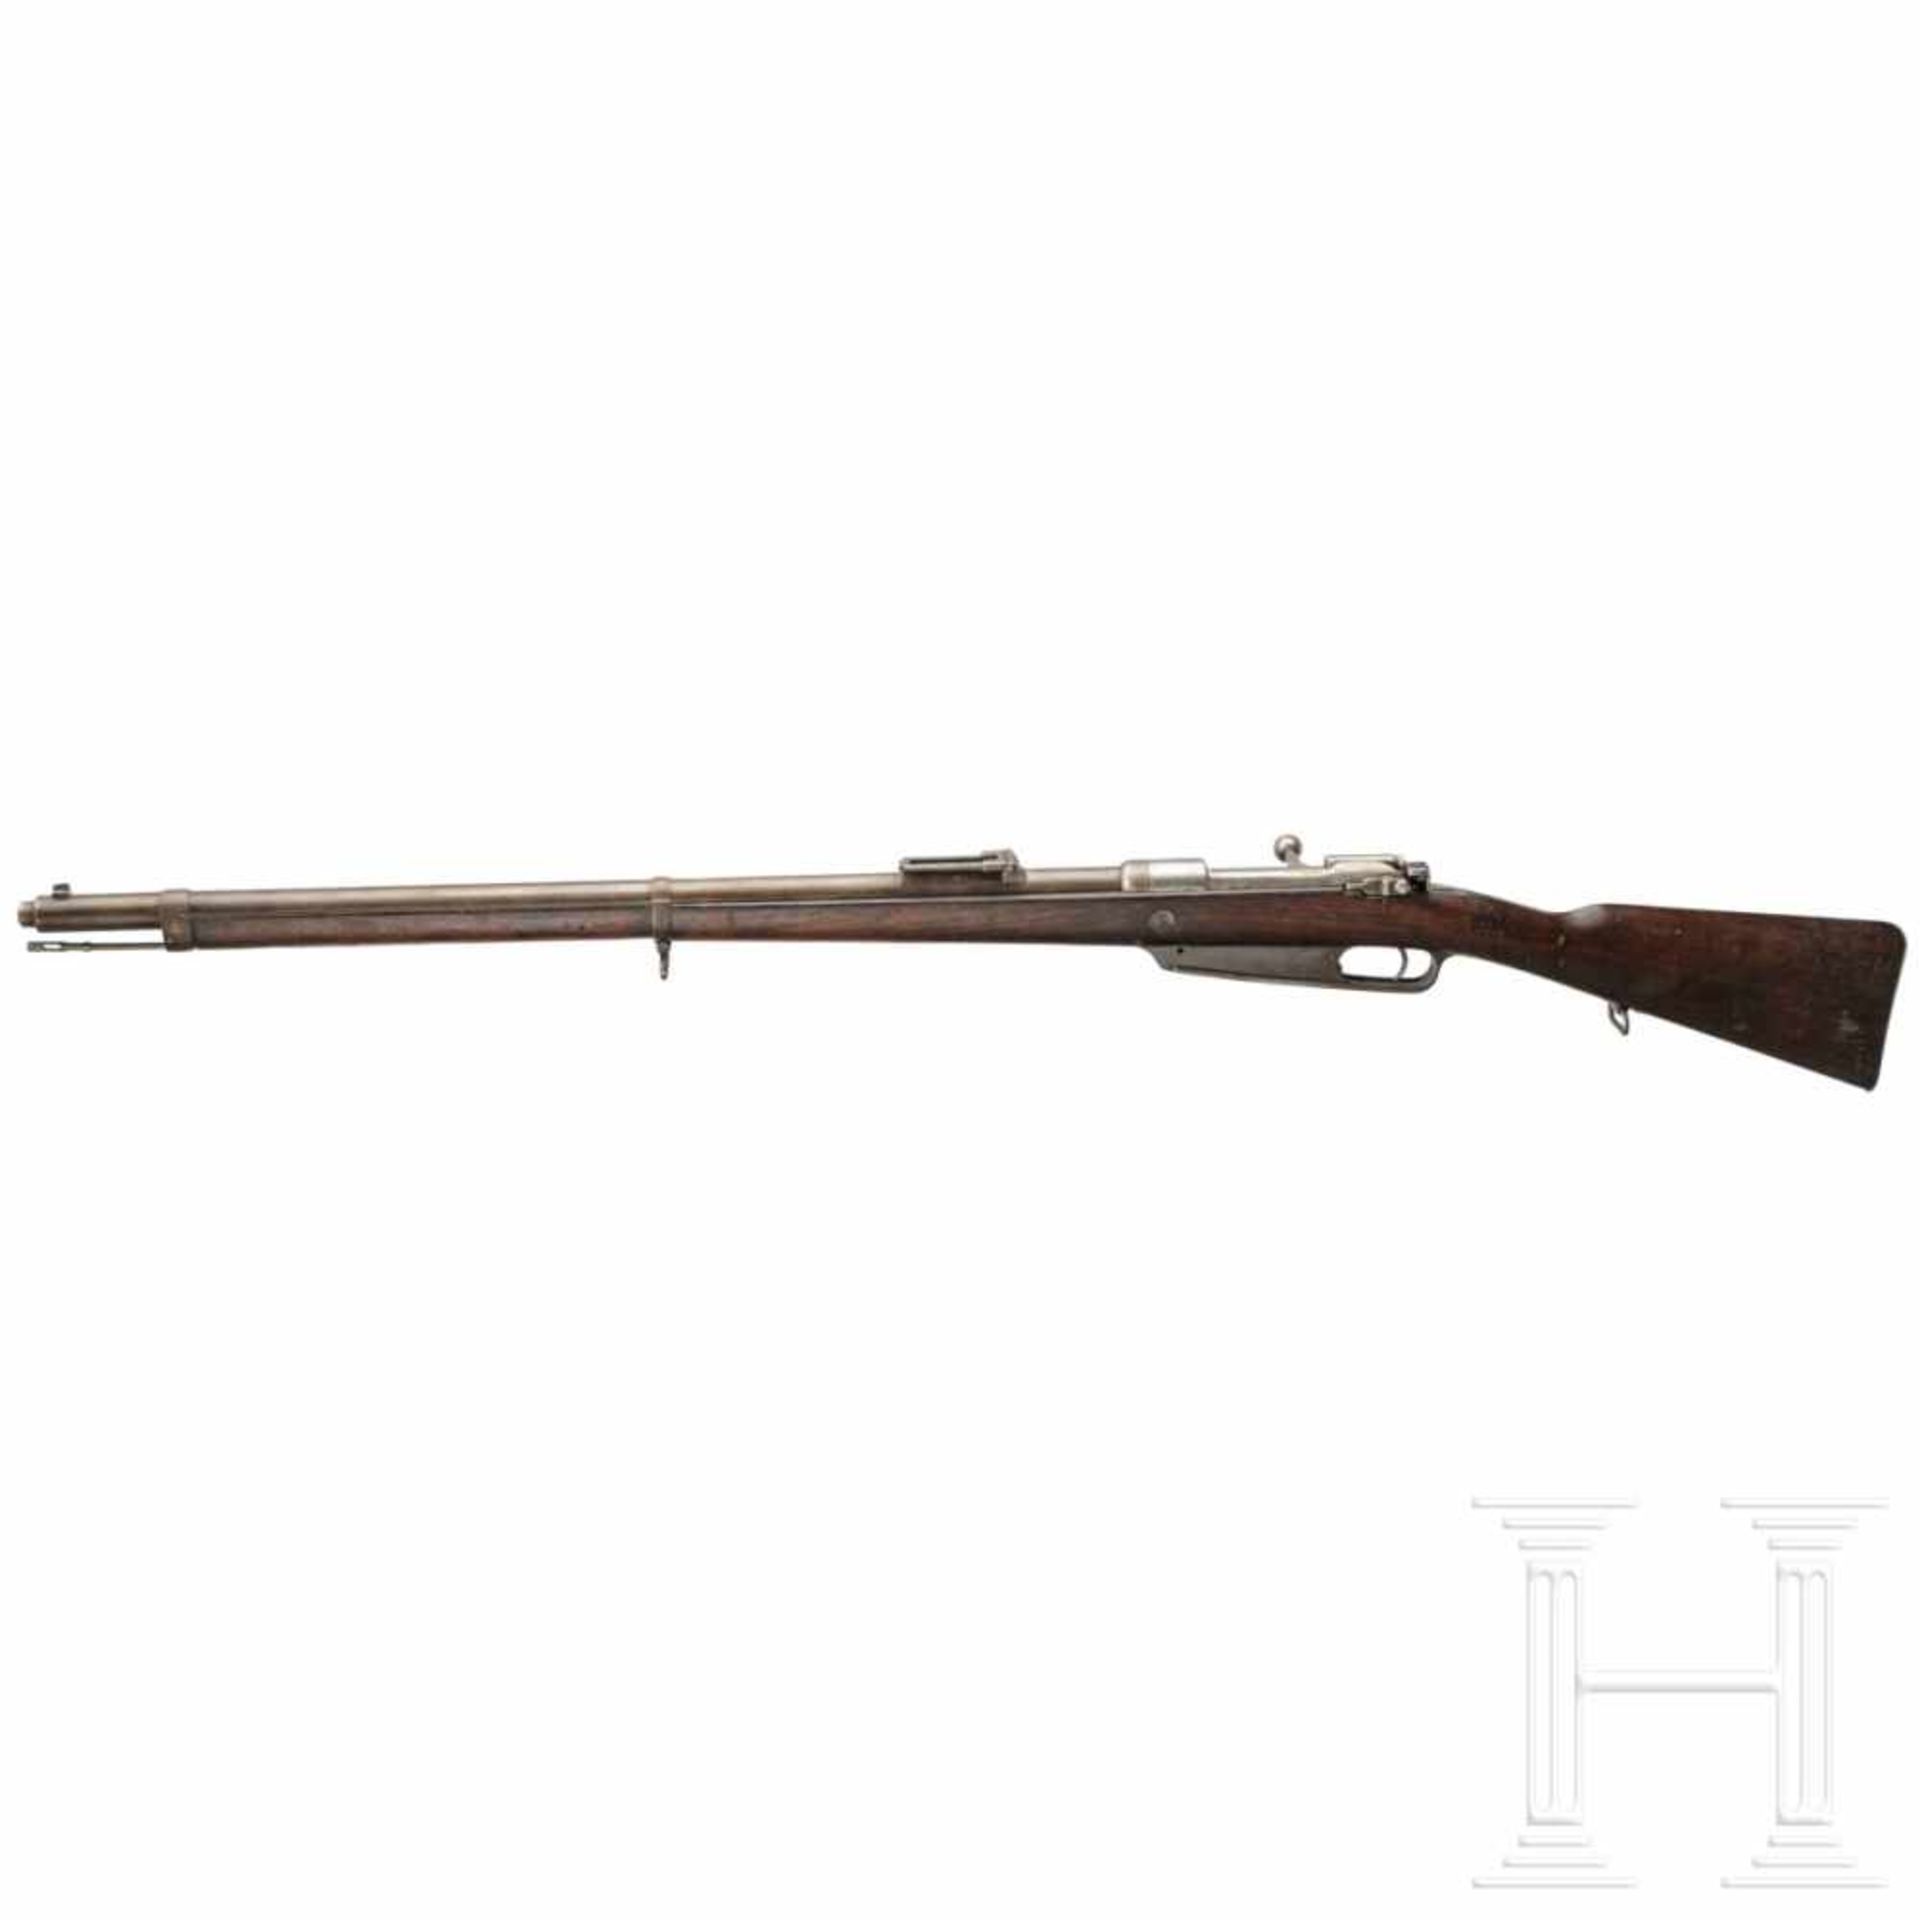 Gewehr 88, Steyr 1890Kal. 8x57 IS, Nr. F9858, Nicht nummerngleich. Fast blanker Lauf. Visierblatt in - Bild 2 aus 3